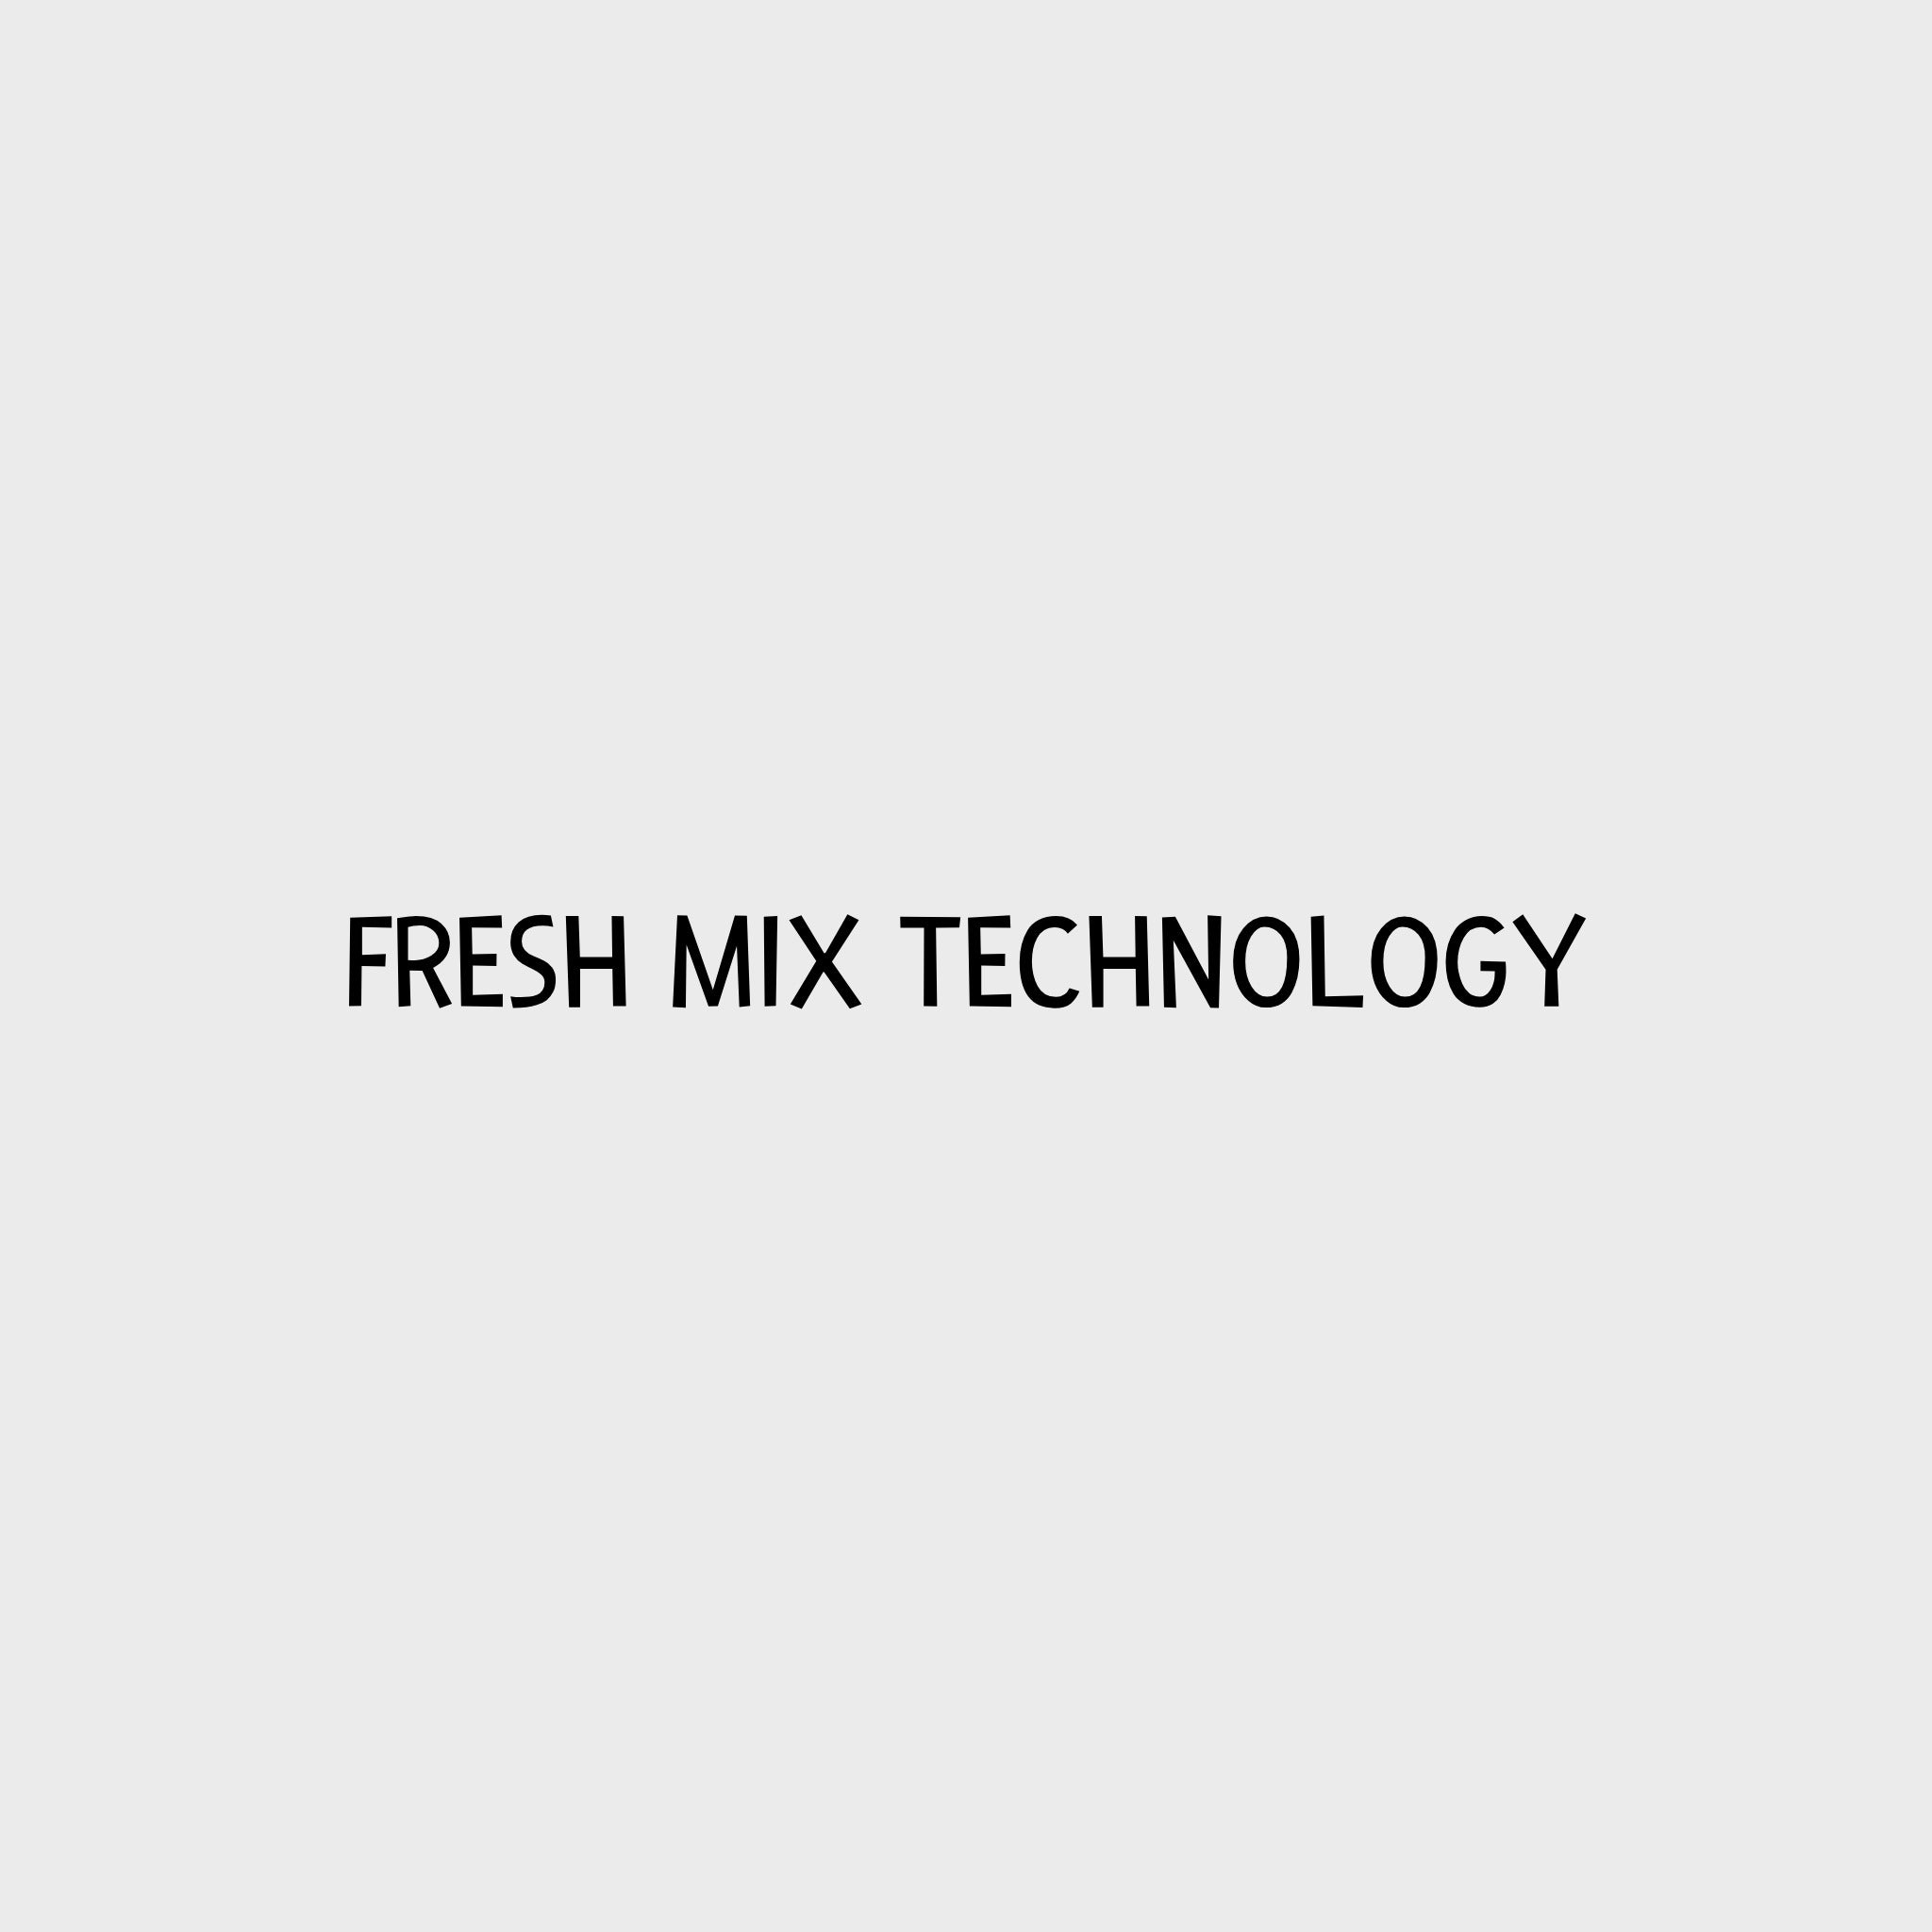 Video - Fresh Mix Technology von The Goodstuff